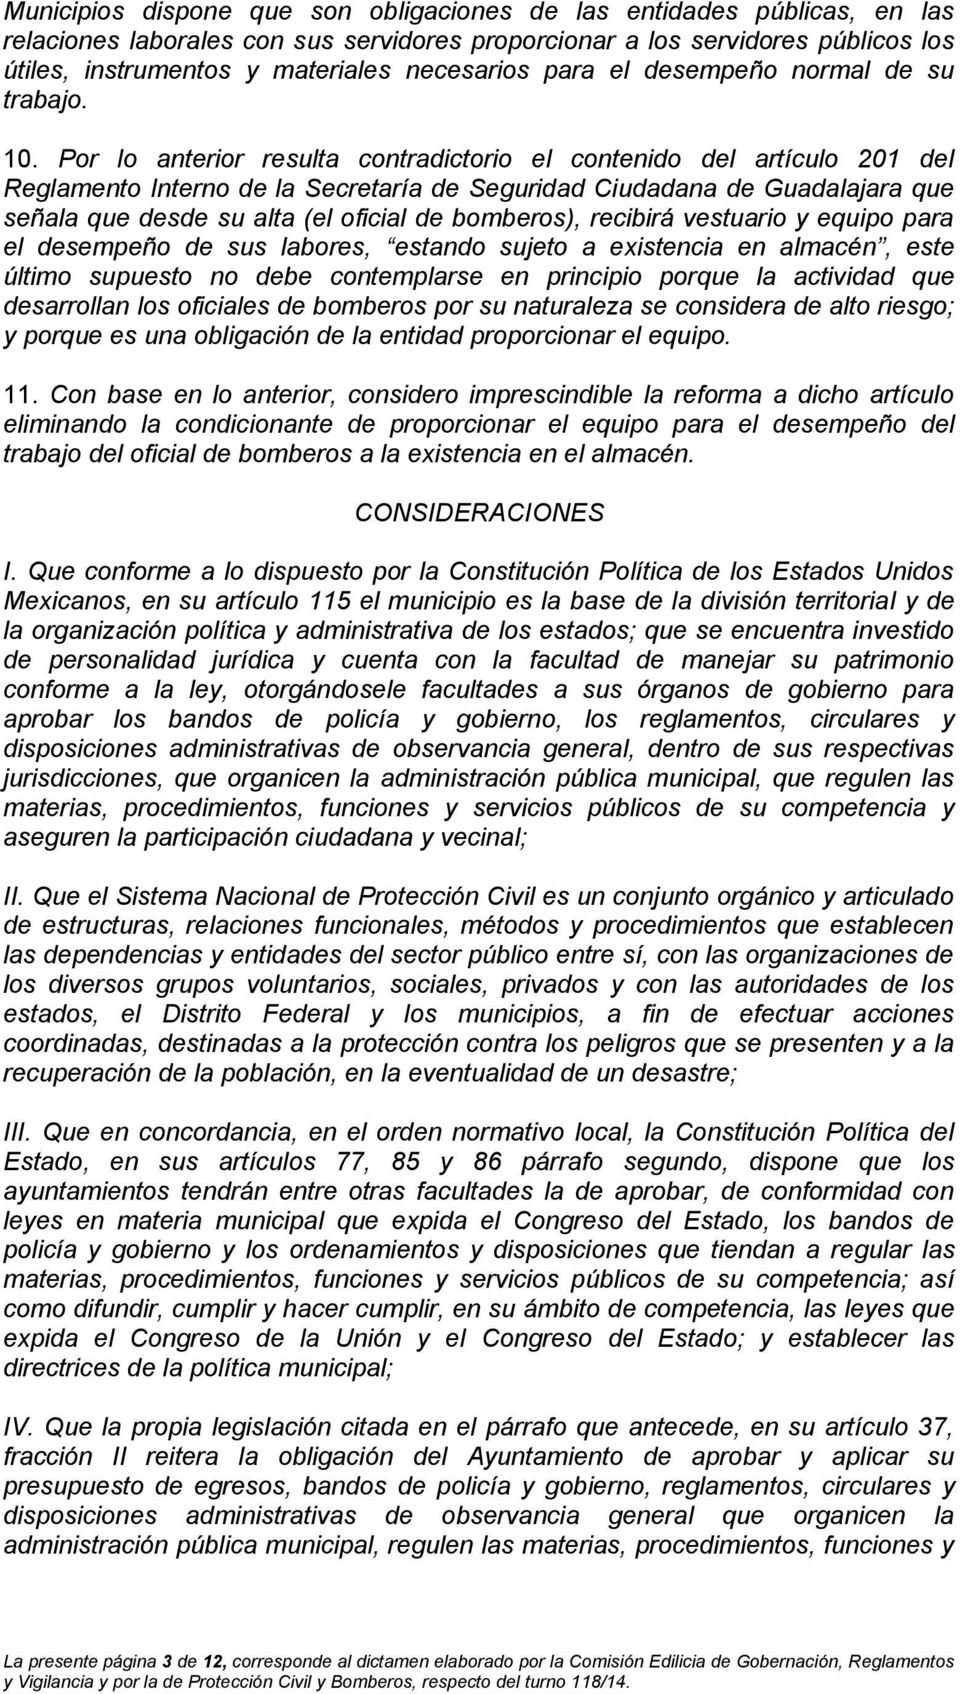 Por lo anterior resulta contradictorio el contenido del artículo 201 del Reglamento Interno de la Secretaría de Seguridad Ciudadana de Guadalajara que señala que desde su alta (el oficial de